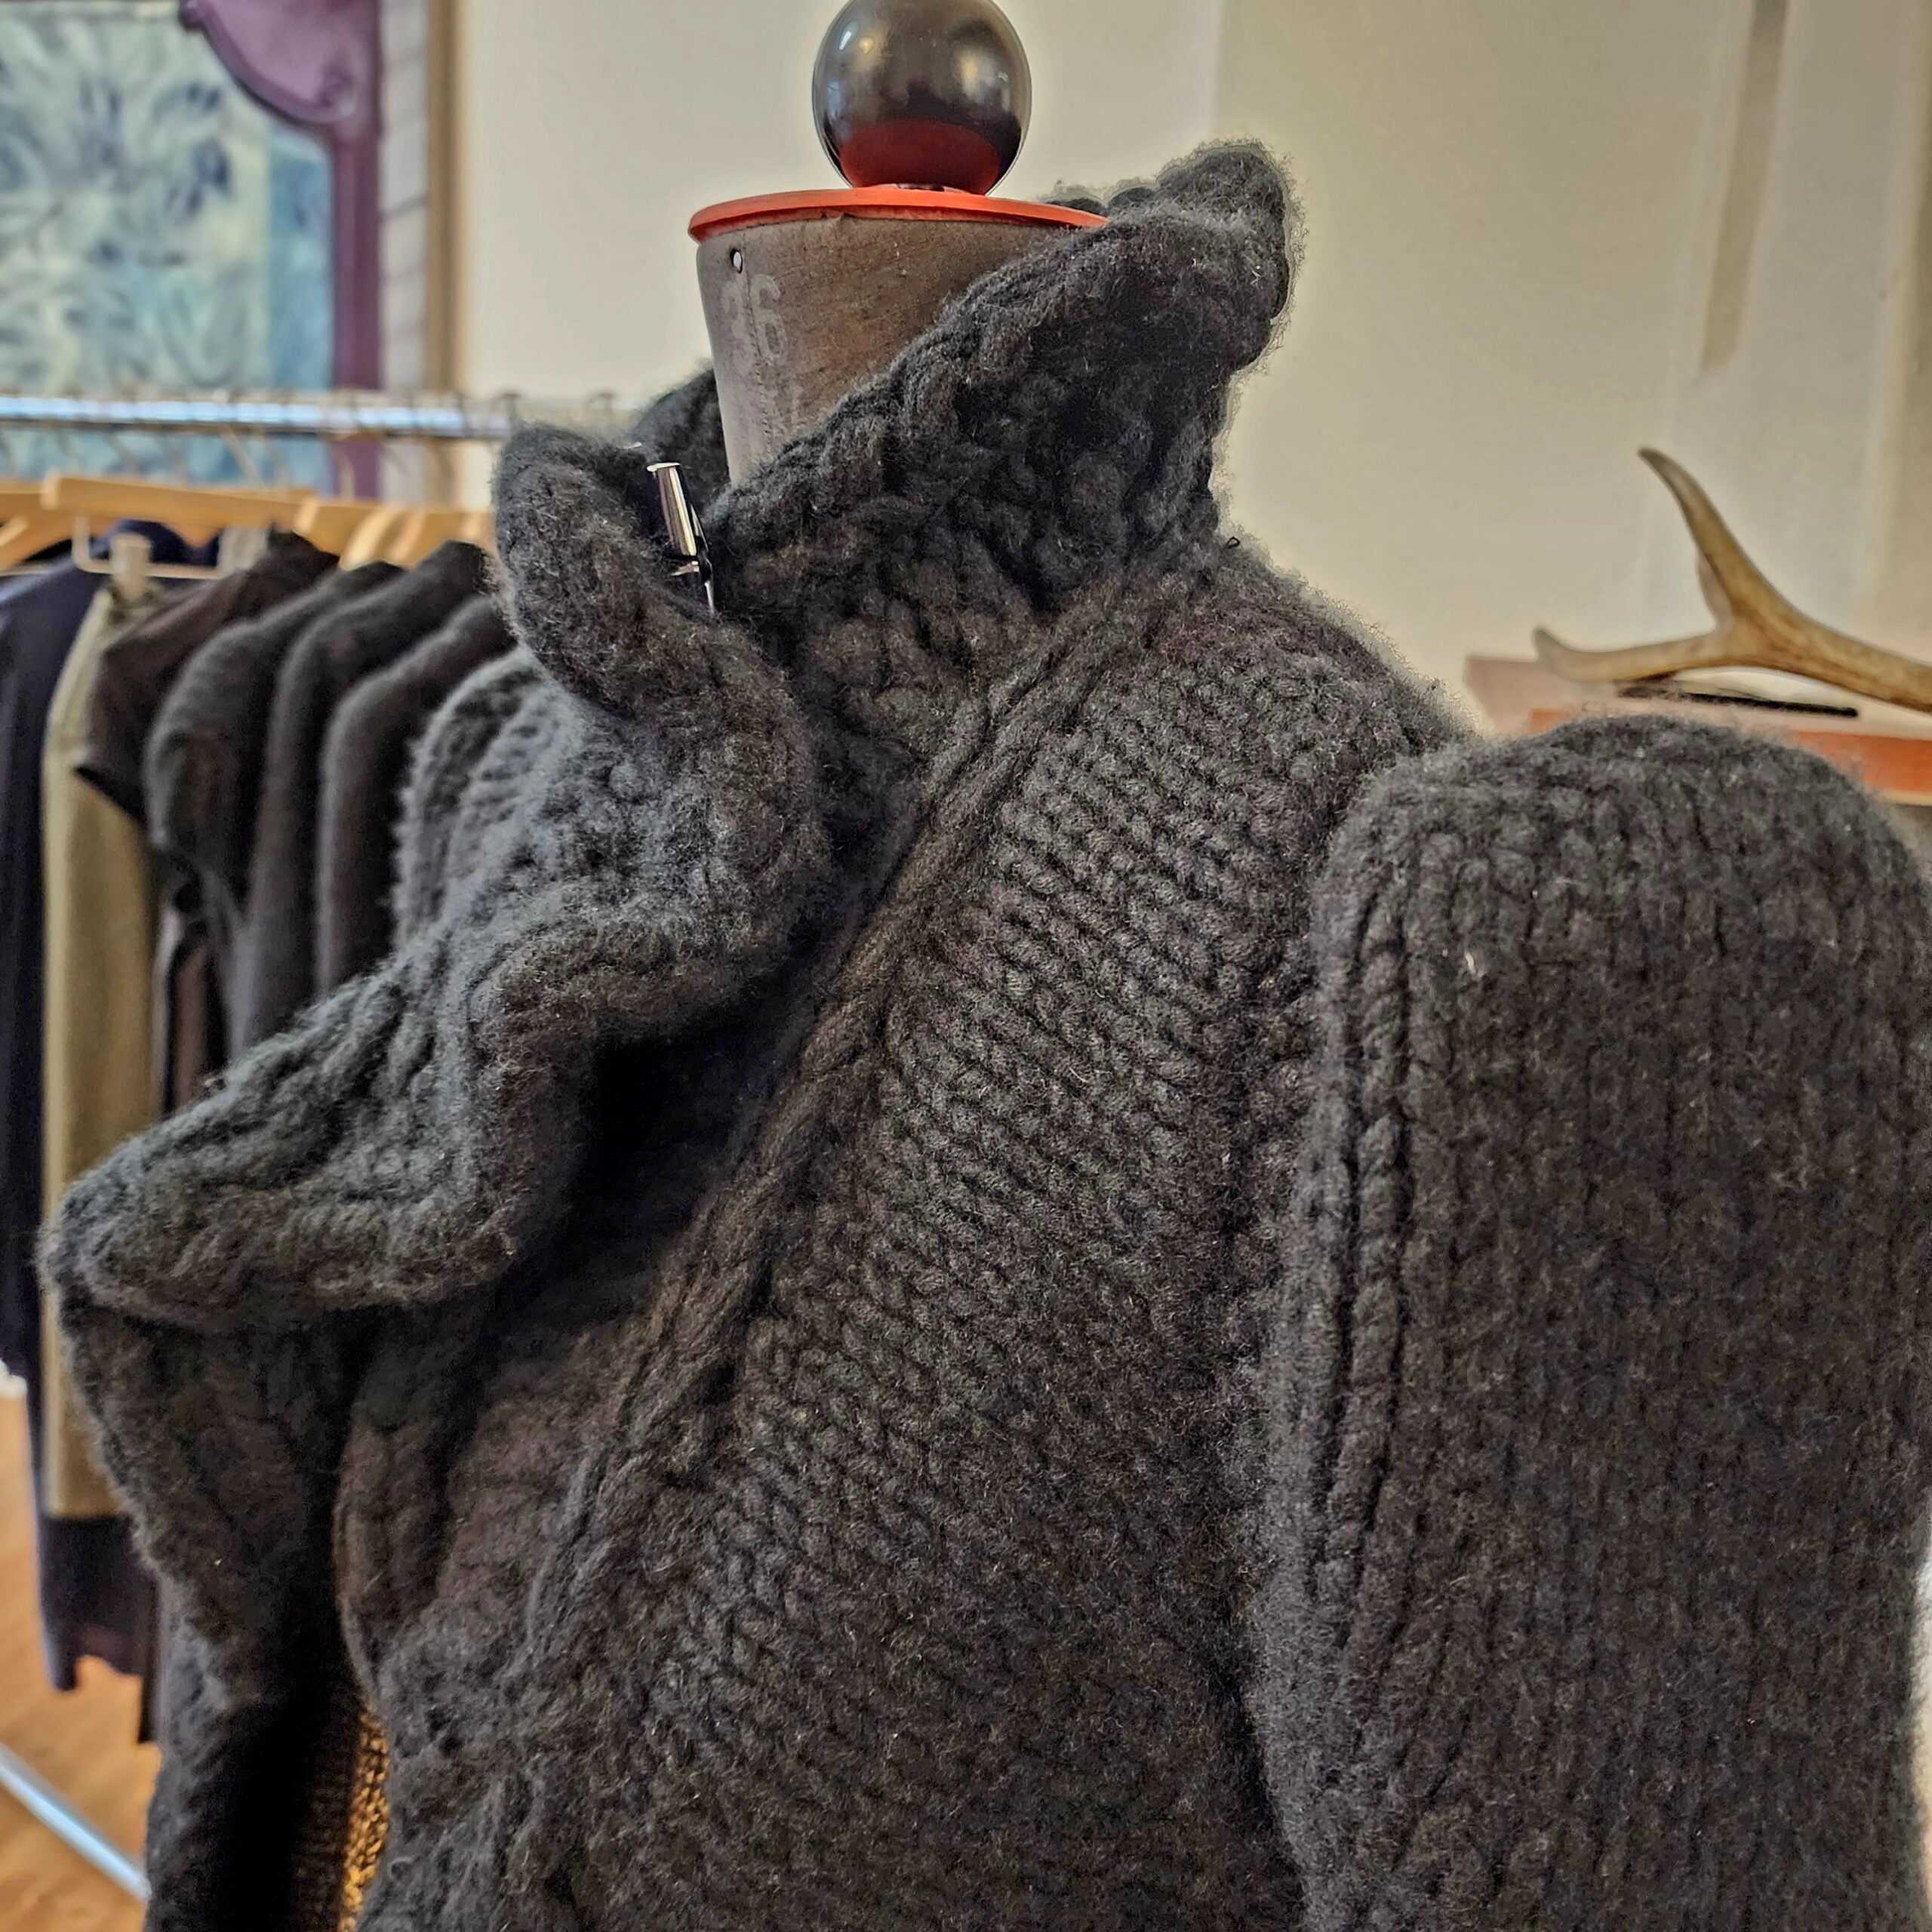 Pugnat luxury knitwear based in Berlin via 360 MAGAZINE. 

